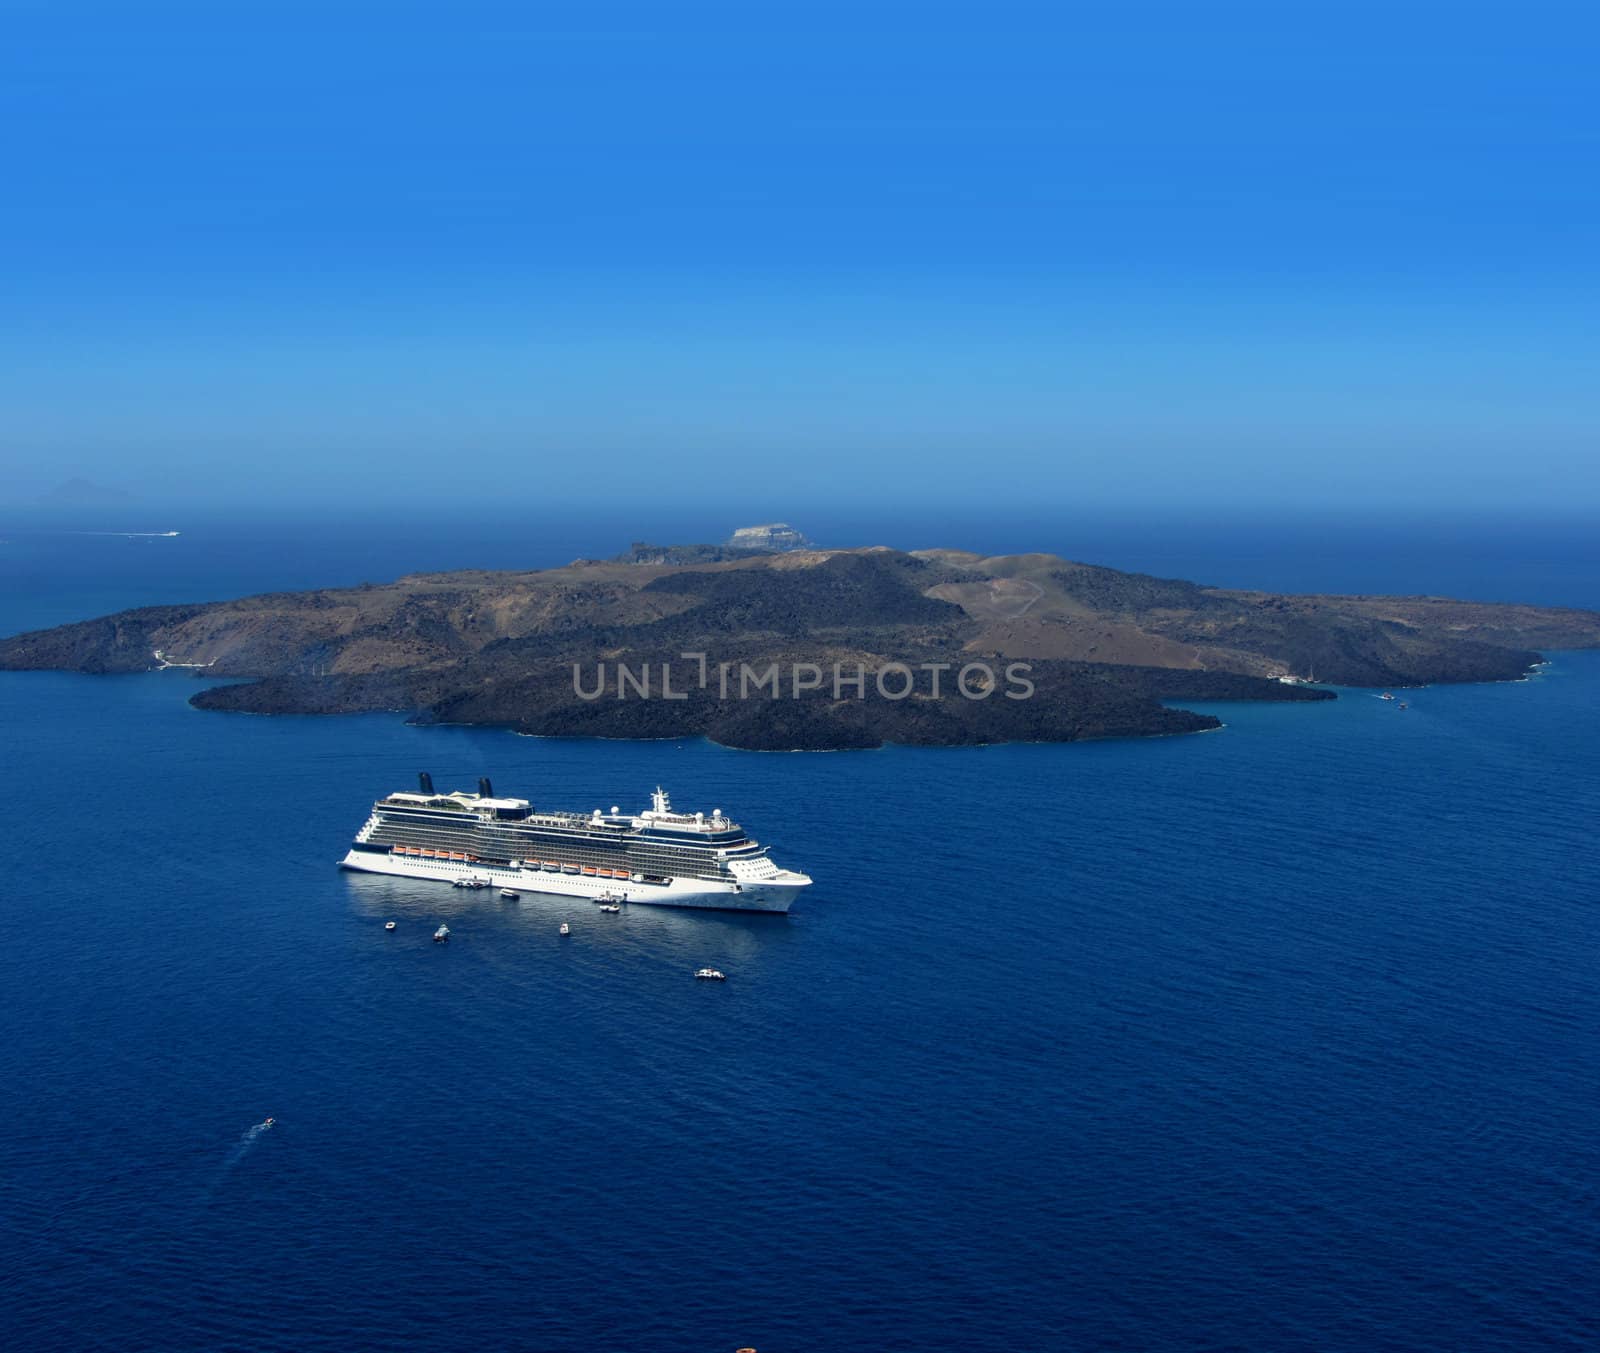 Luxus cruiser in Santorini caldera by anterovium